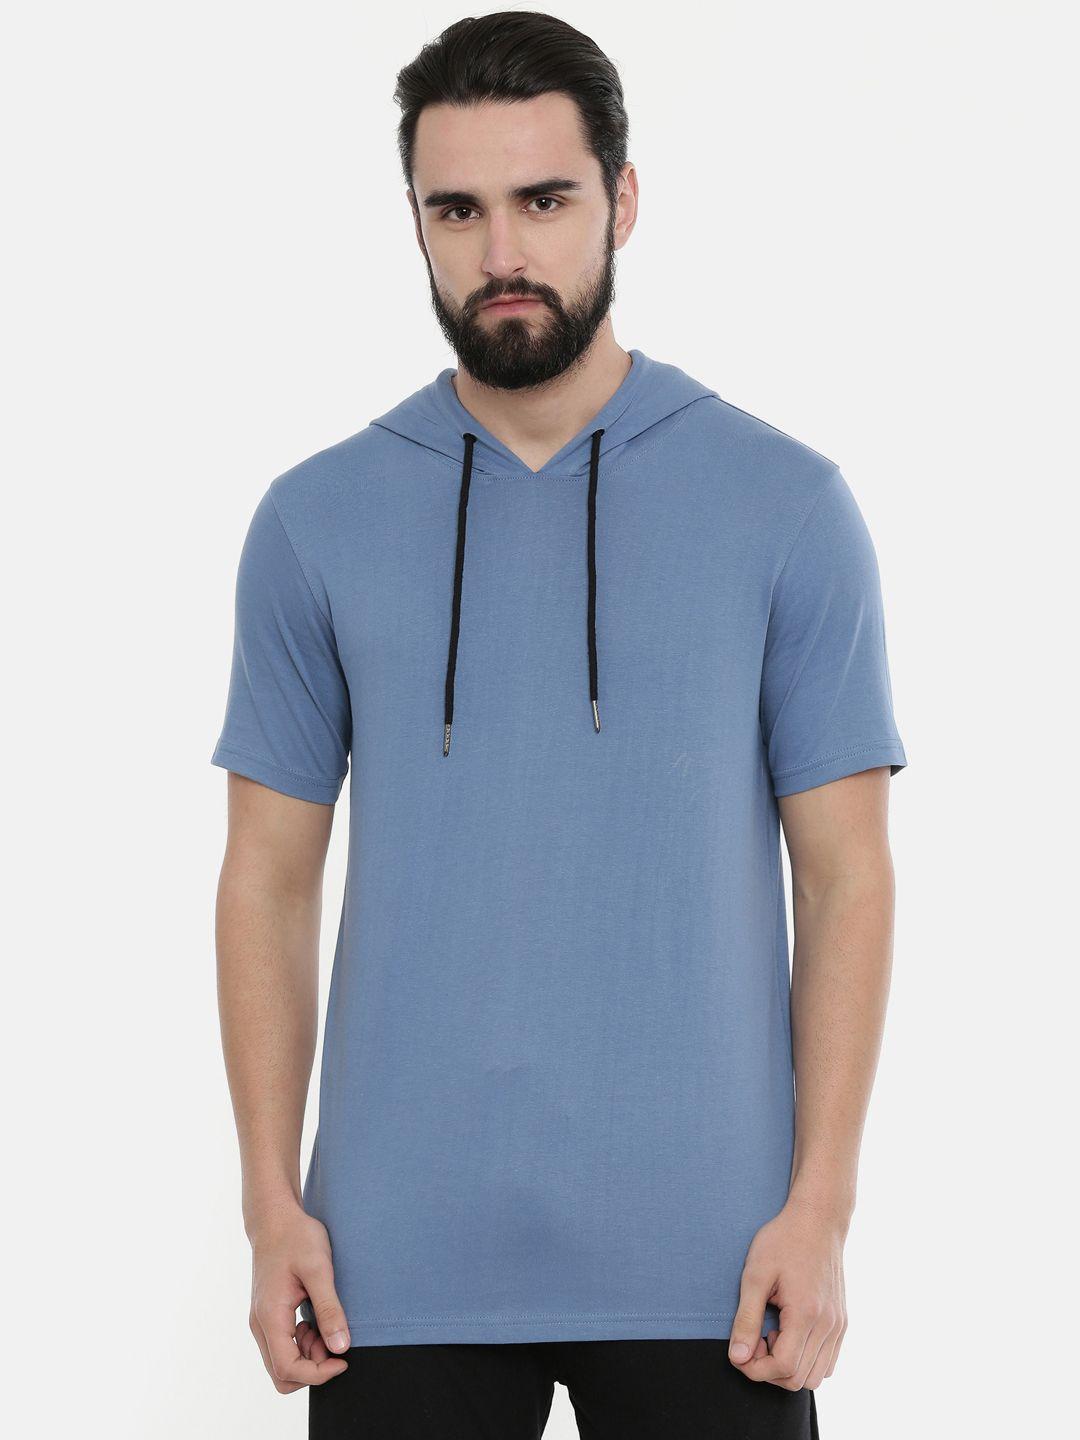 bushirt men turquoise blue solid hood pure cotton t-shirt